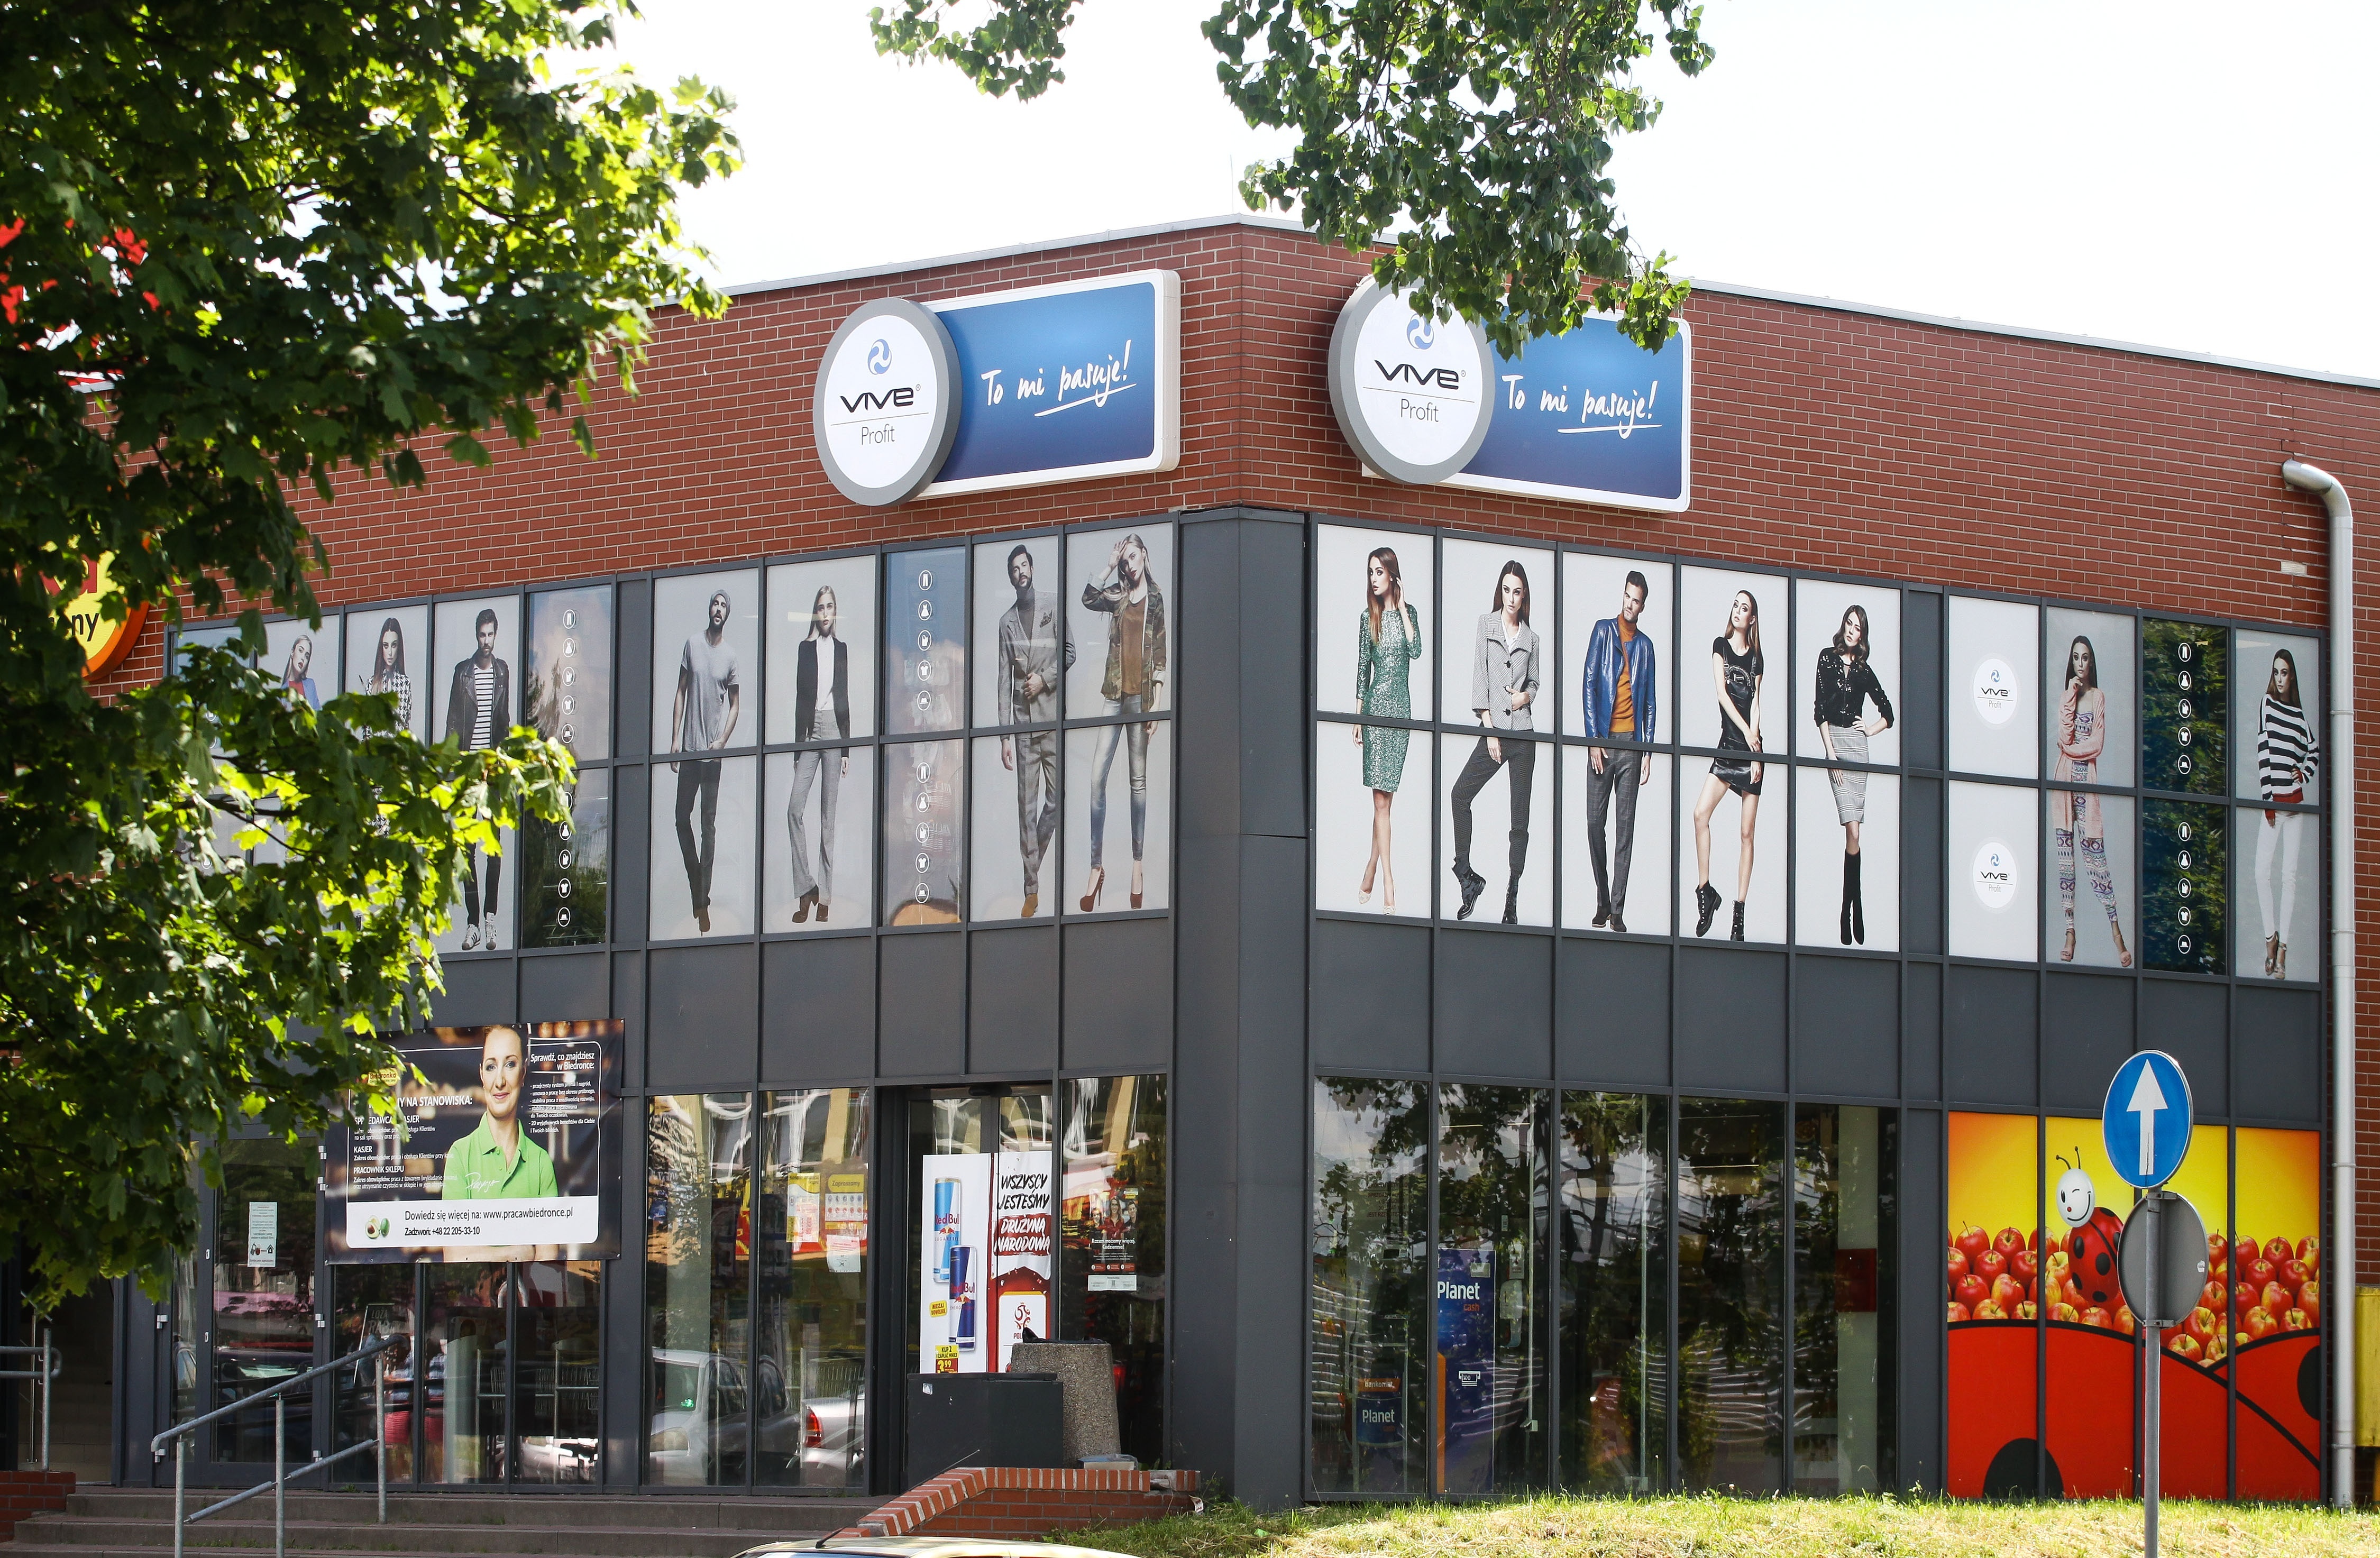 Second-handy, sklepy z używaną odzieżą rozwijają sprzedaż przez internet -  Biznes - Forbes.pl